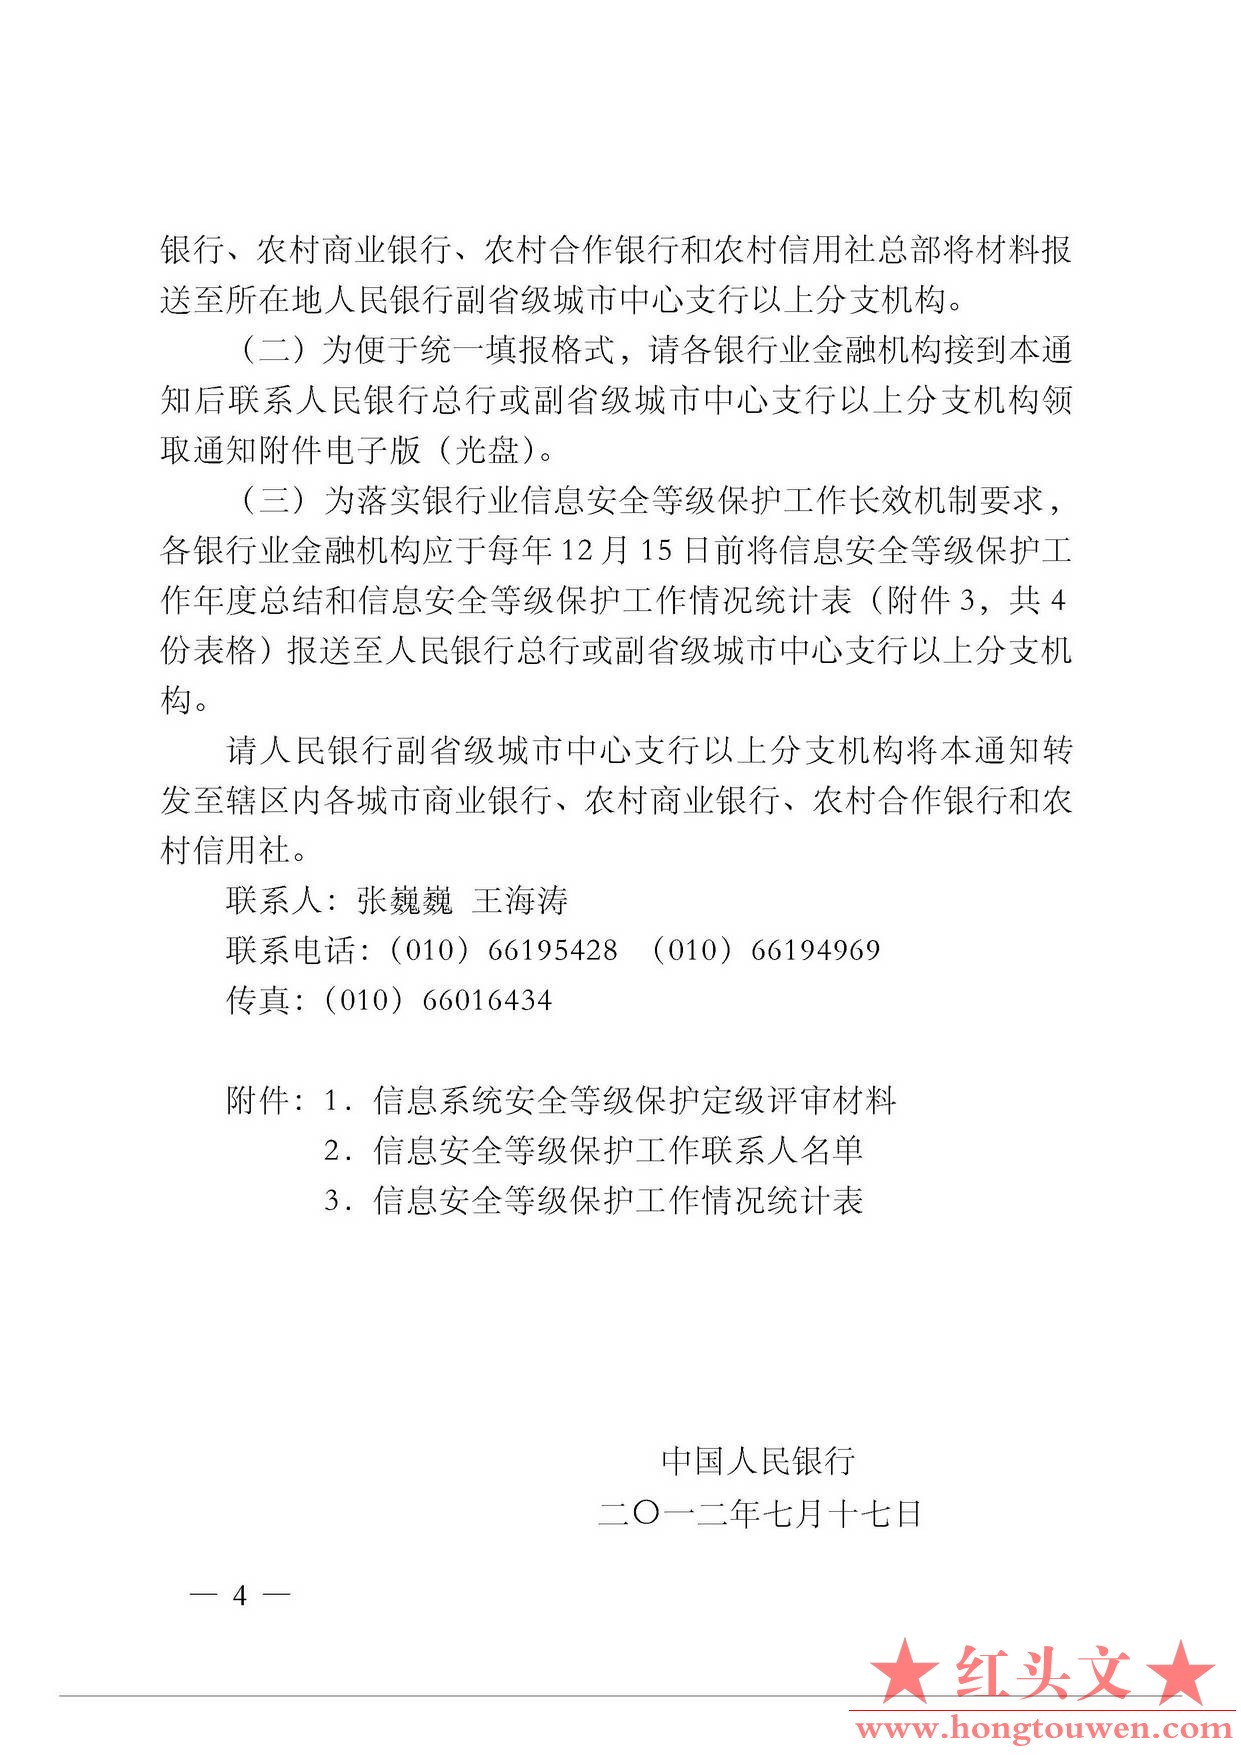 银发[2012]177号-中国人民银行关于进一步推进银行业信息安全等级保护工作的通知_页面_.jpg